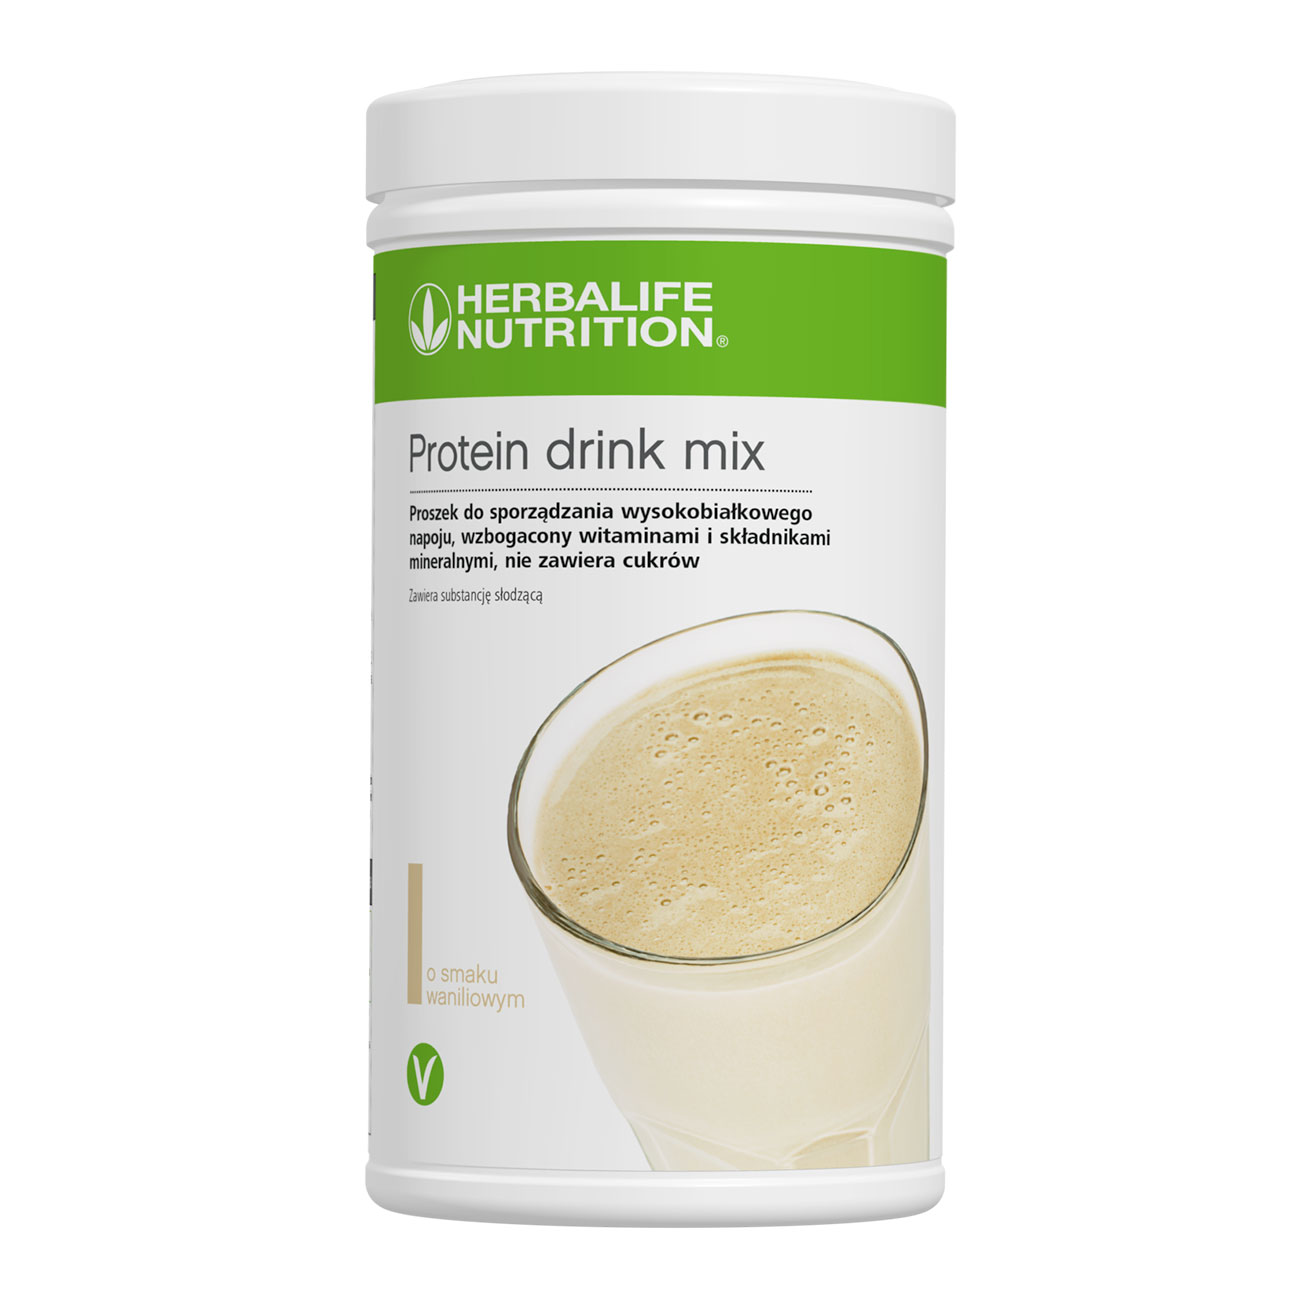 Protein Drink Mix Produkt proteinowy o smaku waniliowym product shot